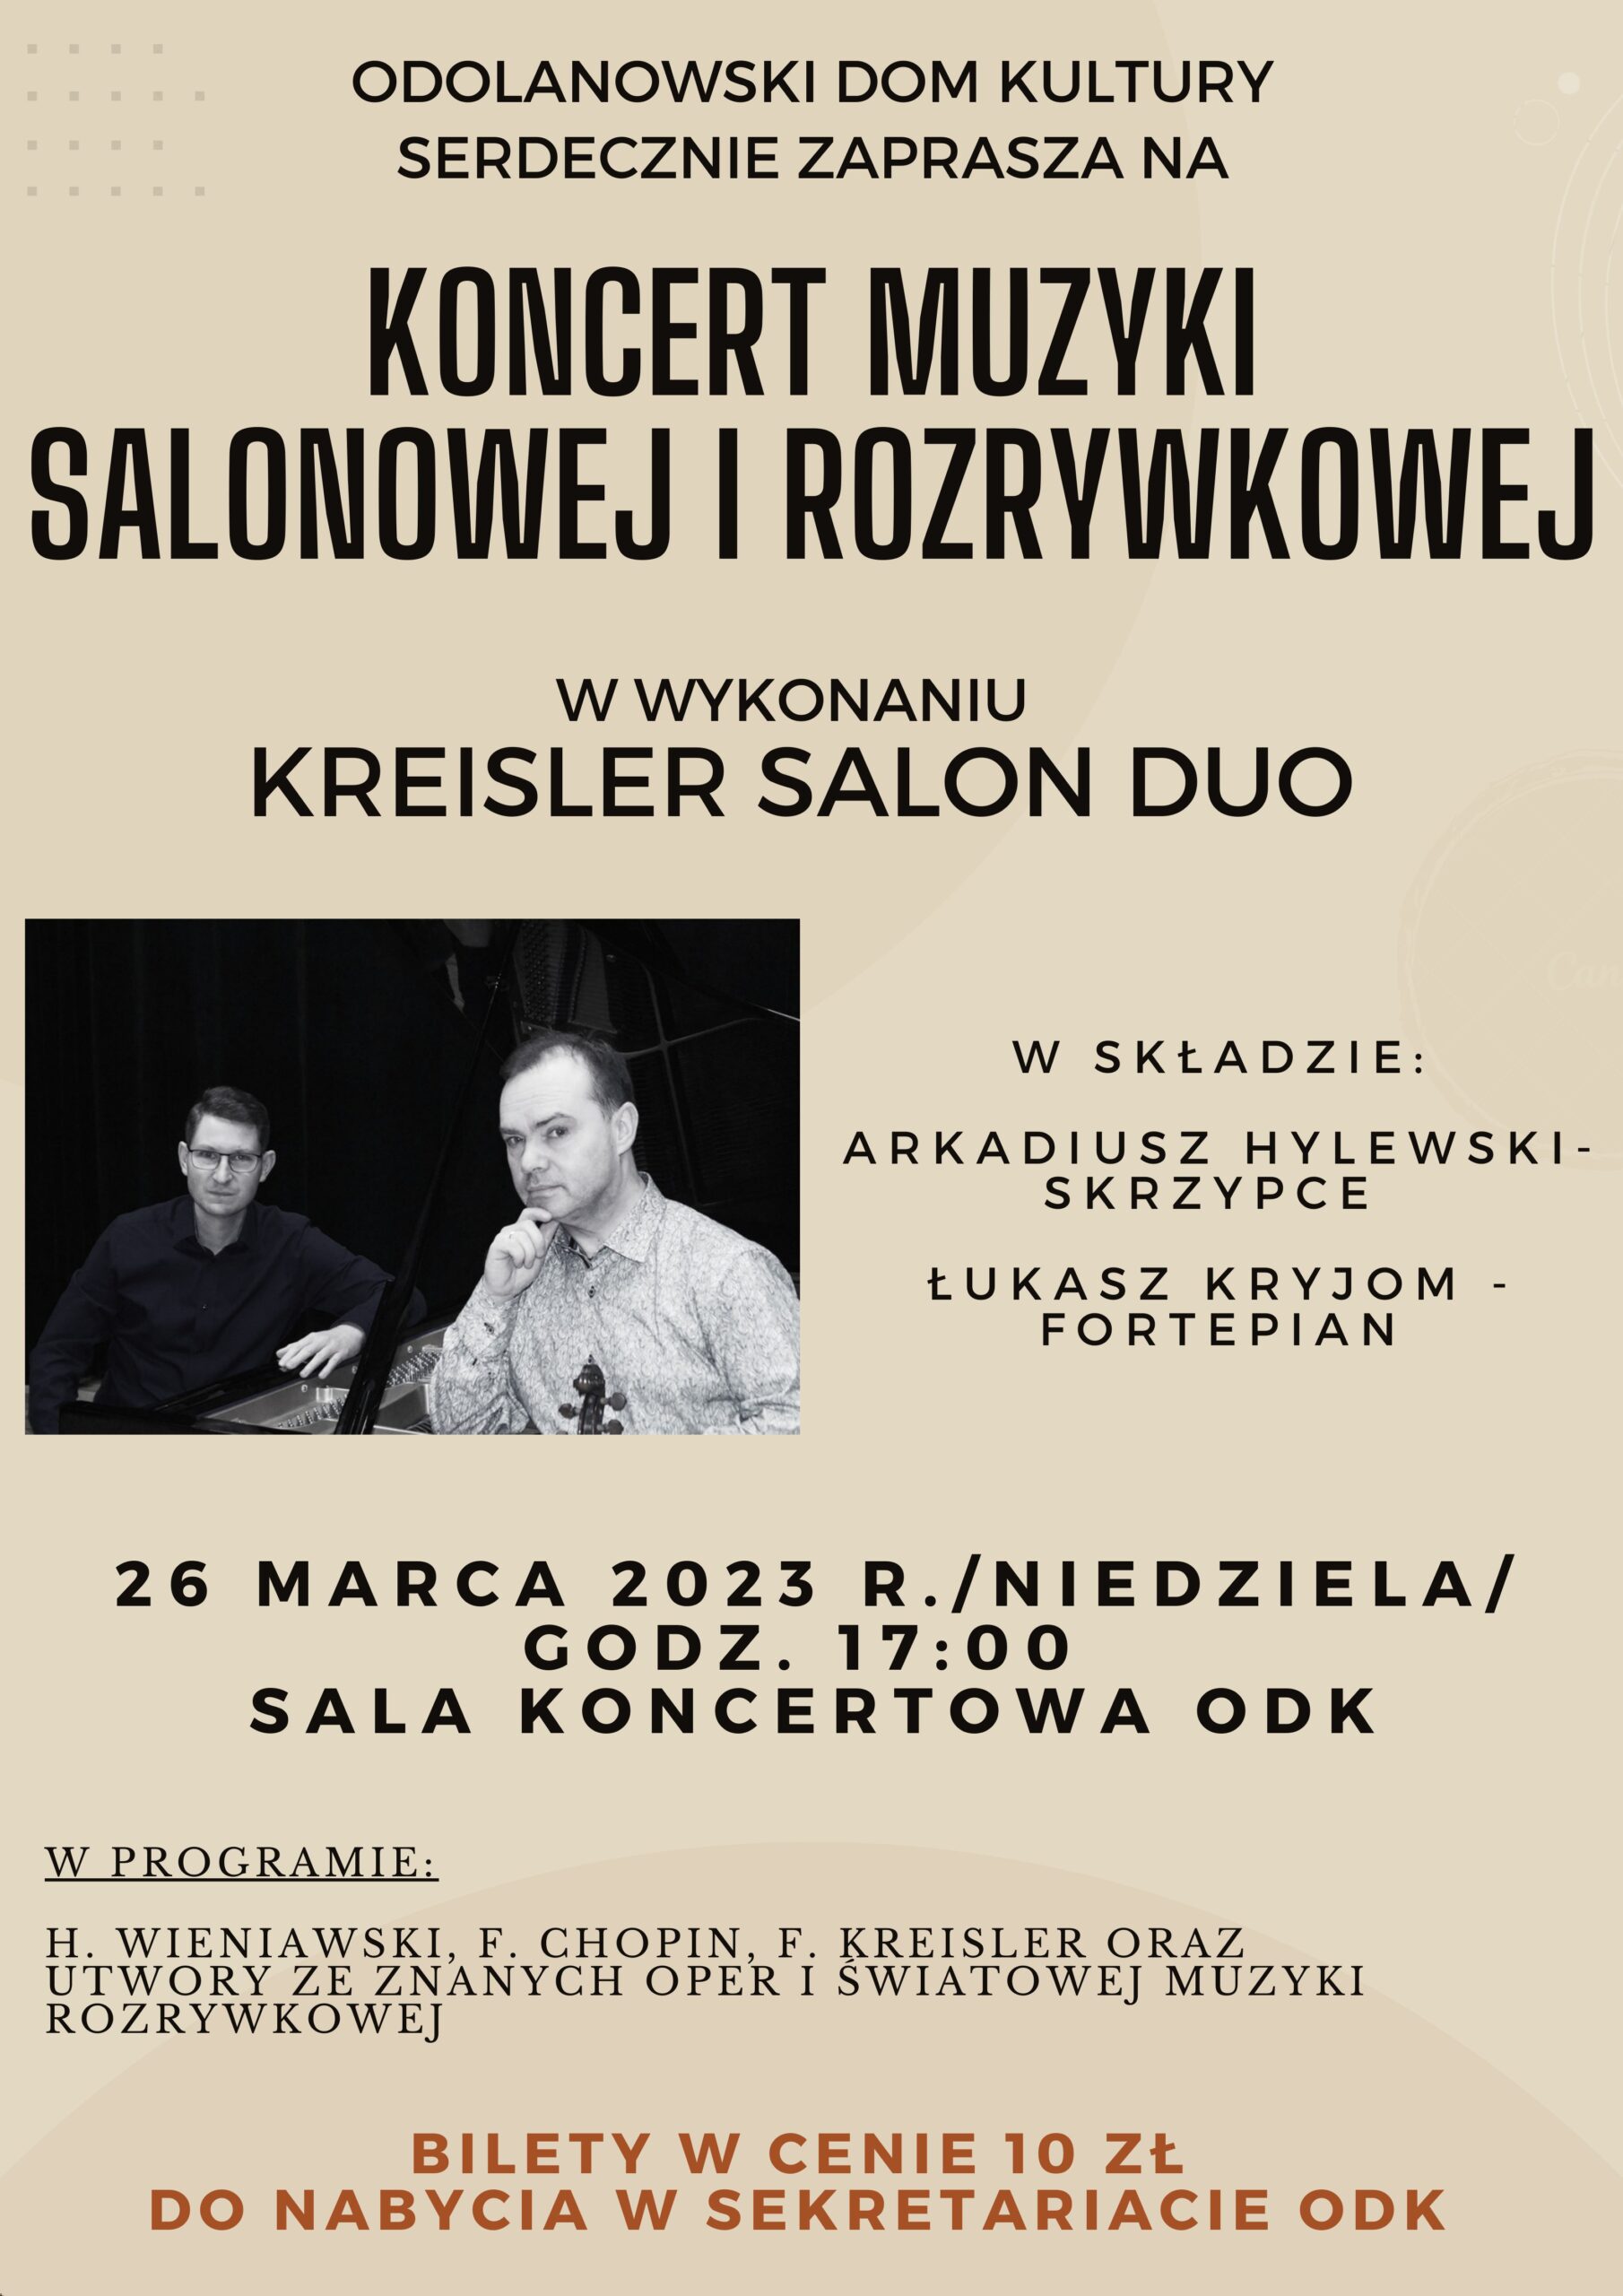 ODK zaprasza na wyjątkowy koncert w wykonaniu Kreisler Salon Duo